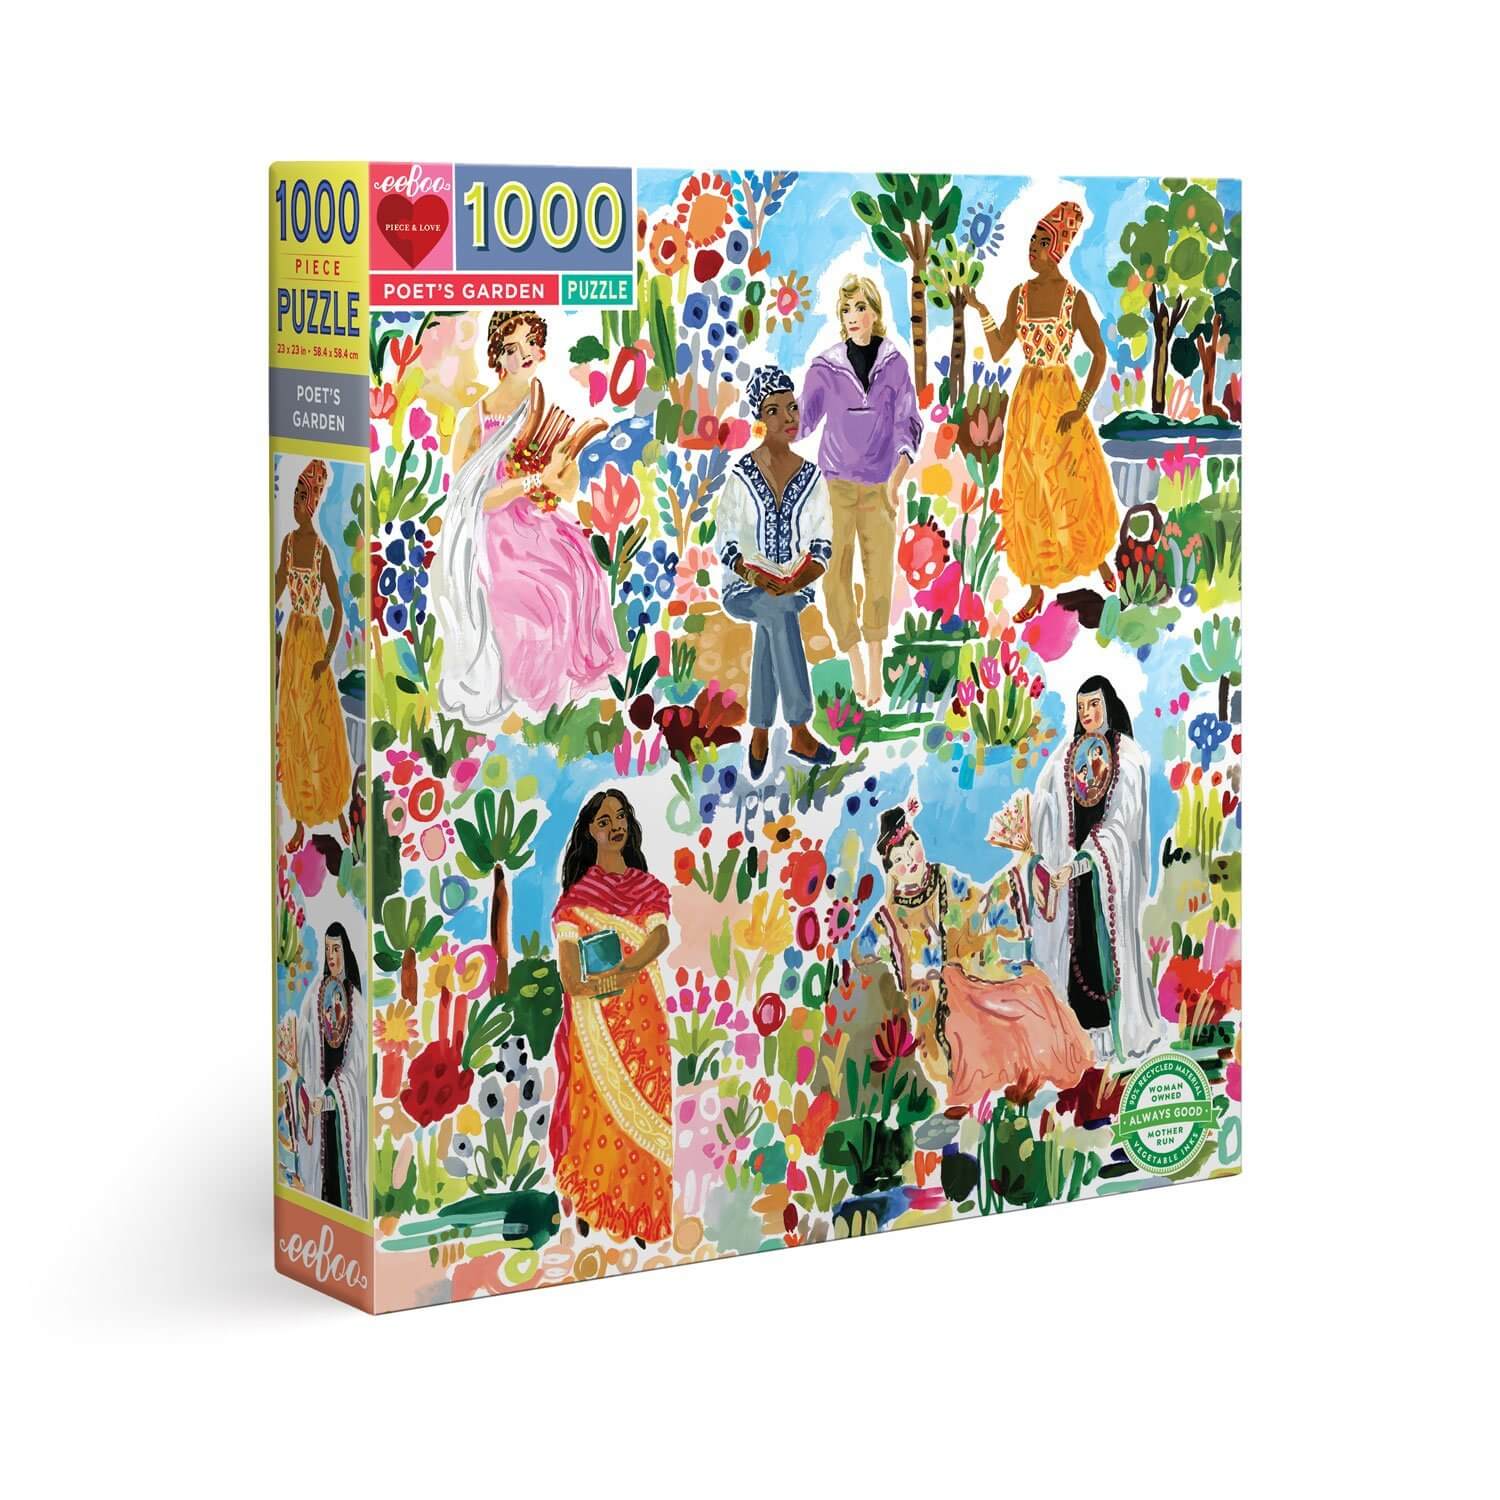 Poet's Garden 1000 Piece Square Puzzle by eeBoo Games Eeboo Prettycleanshop